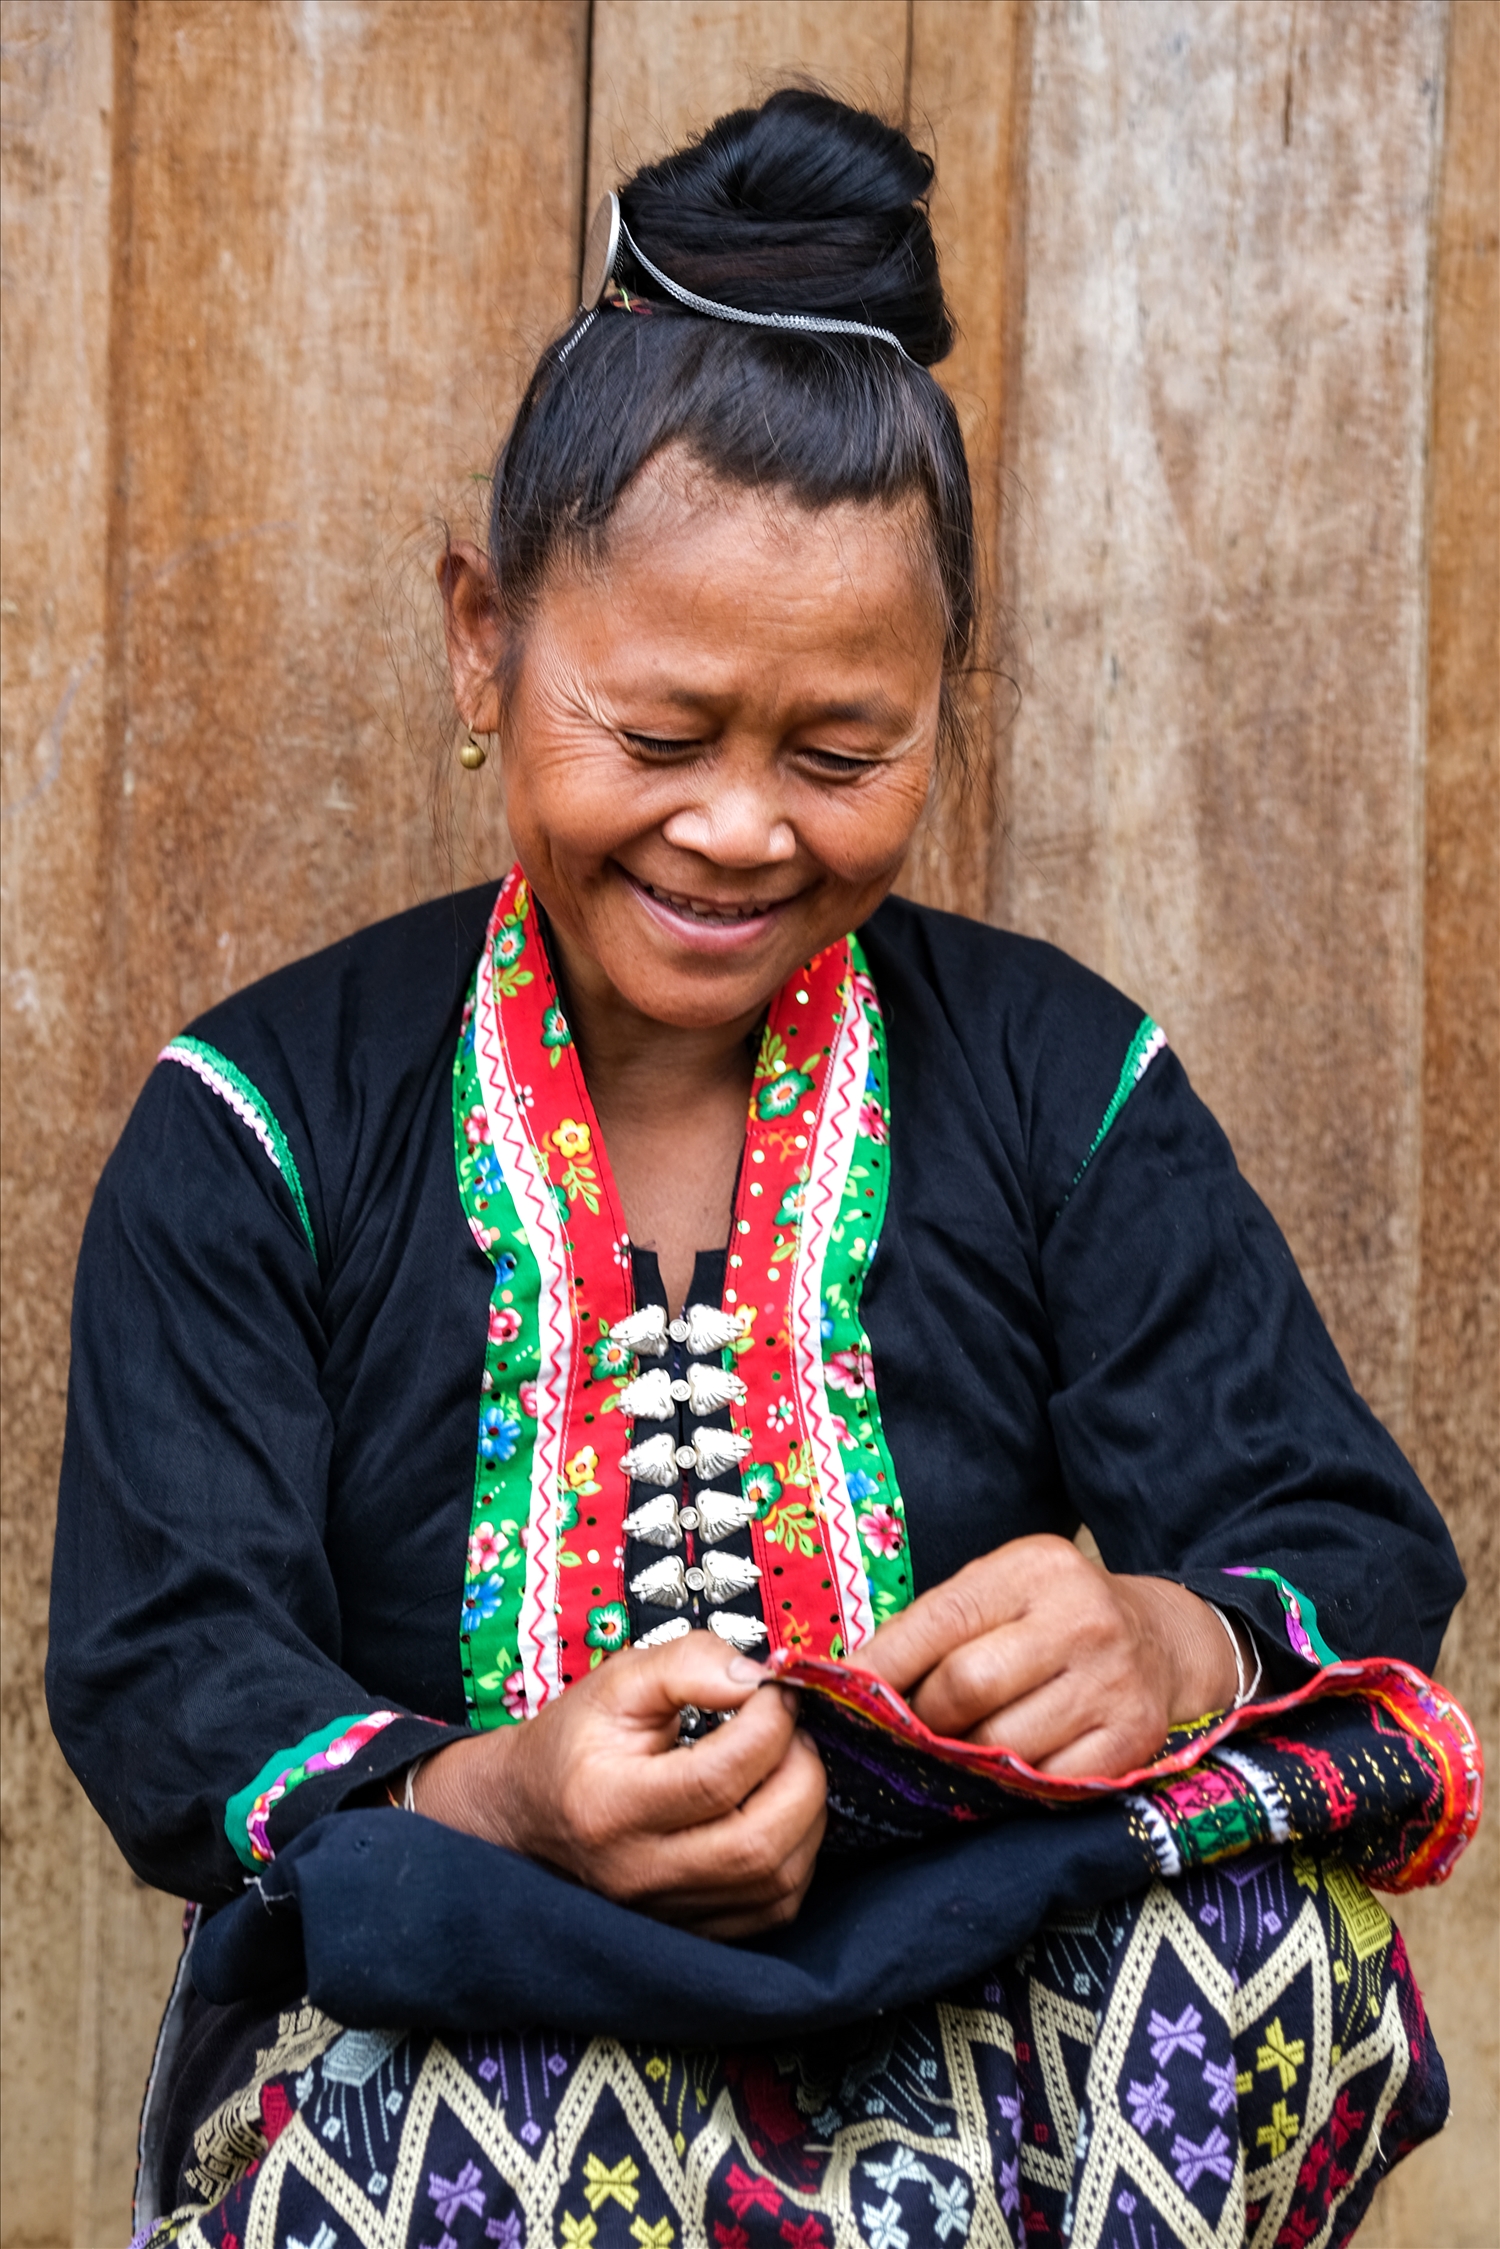 Phụ nữ lớn tuổi ở bản Púng Bon là người nắm giữ những nét độc đáo trong trang phục dân tộc mình…